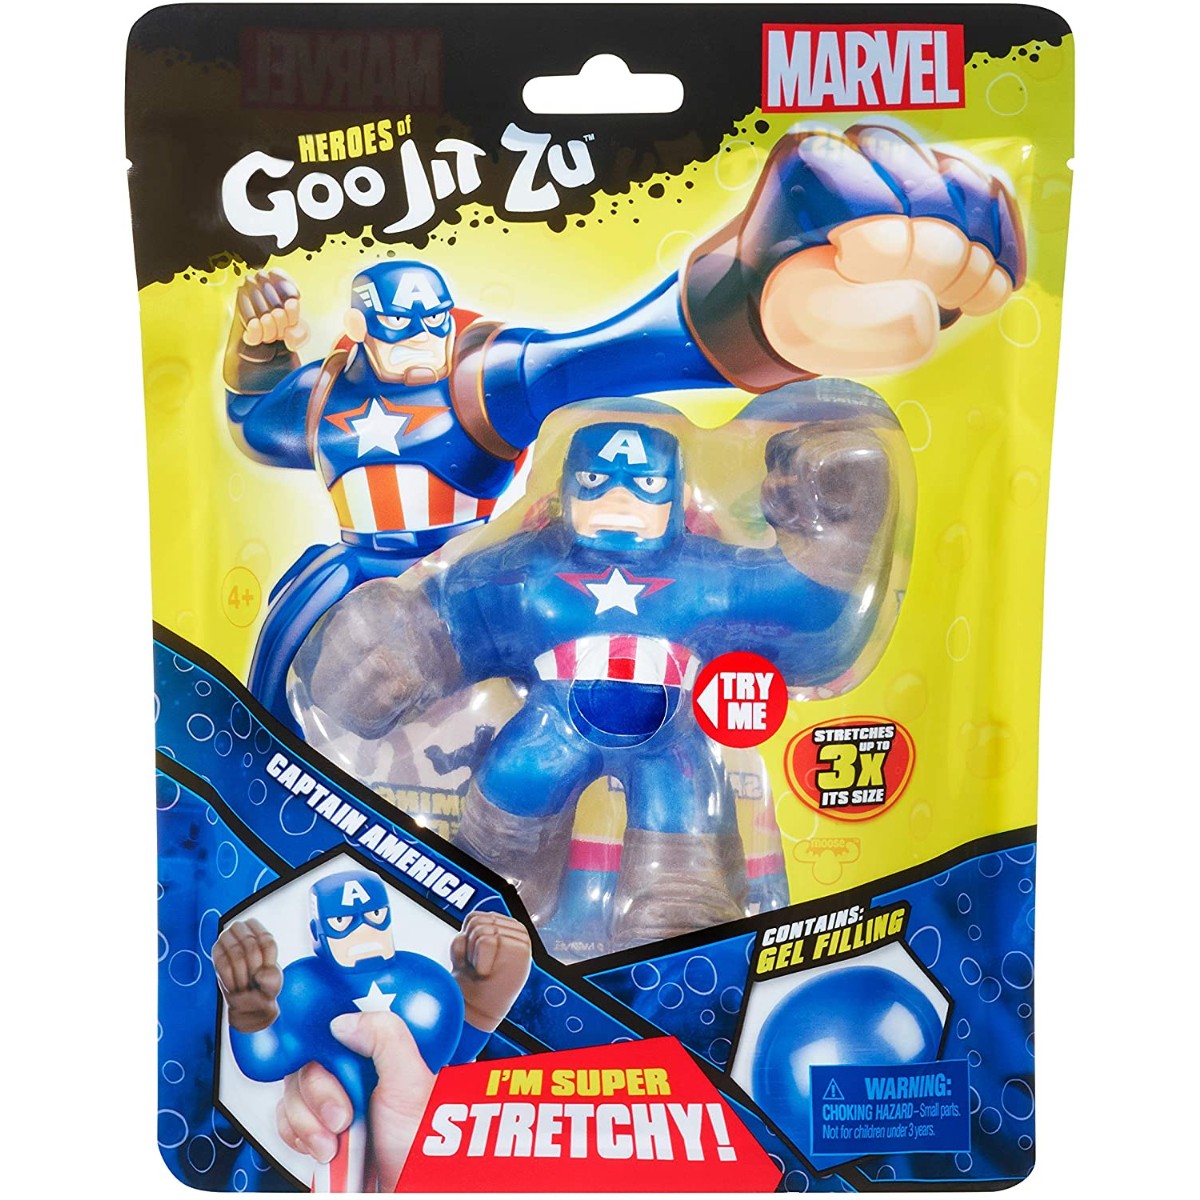 Marvel Heroes of Goo Jit Zu Captain America Framlingham